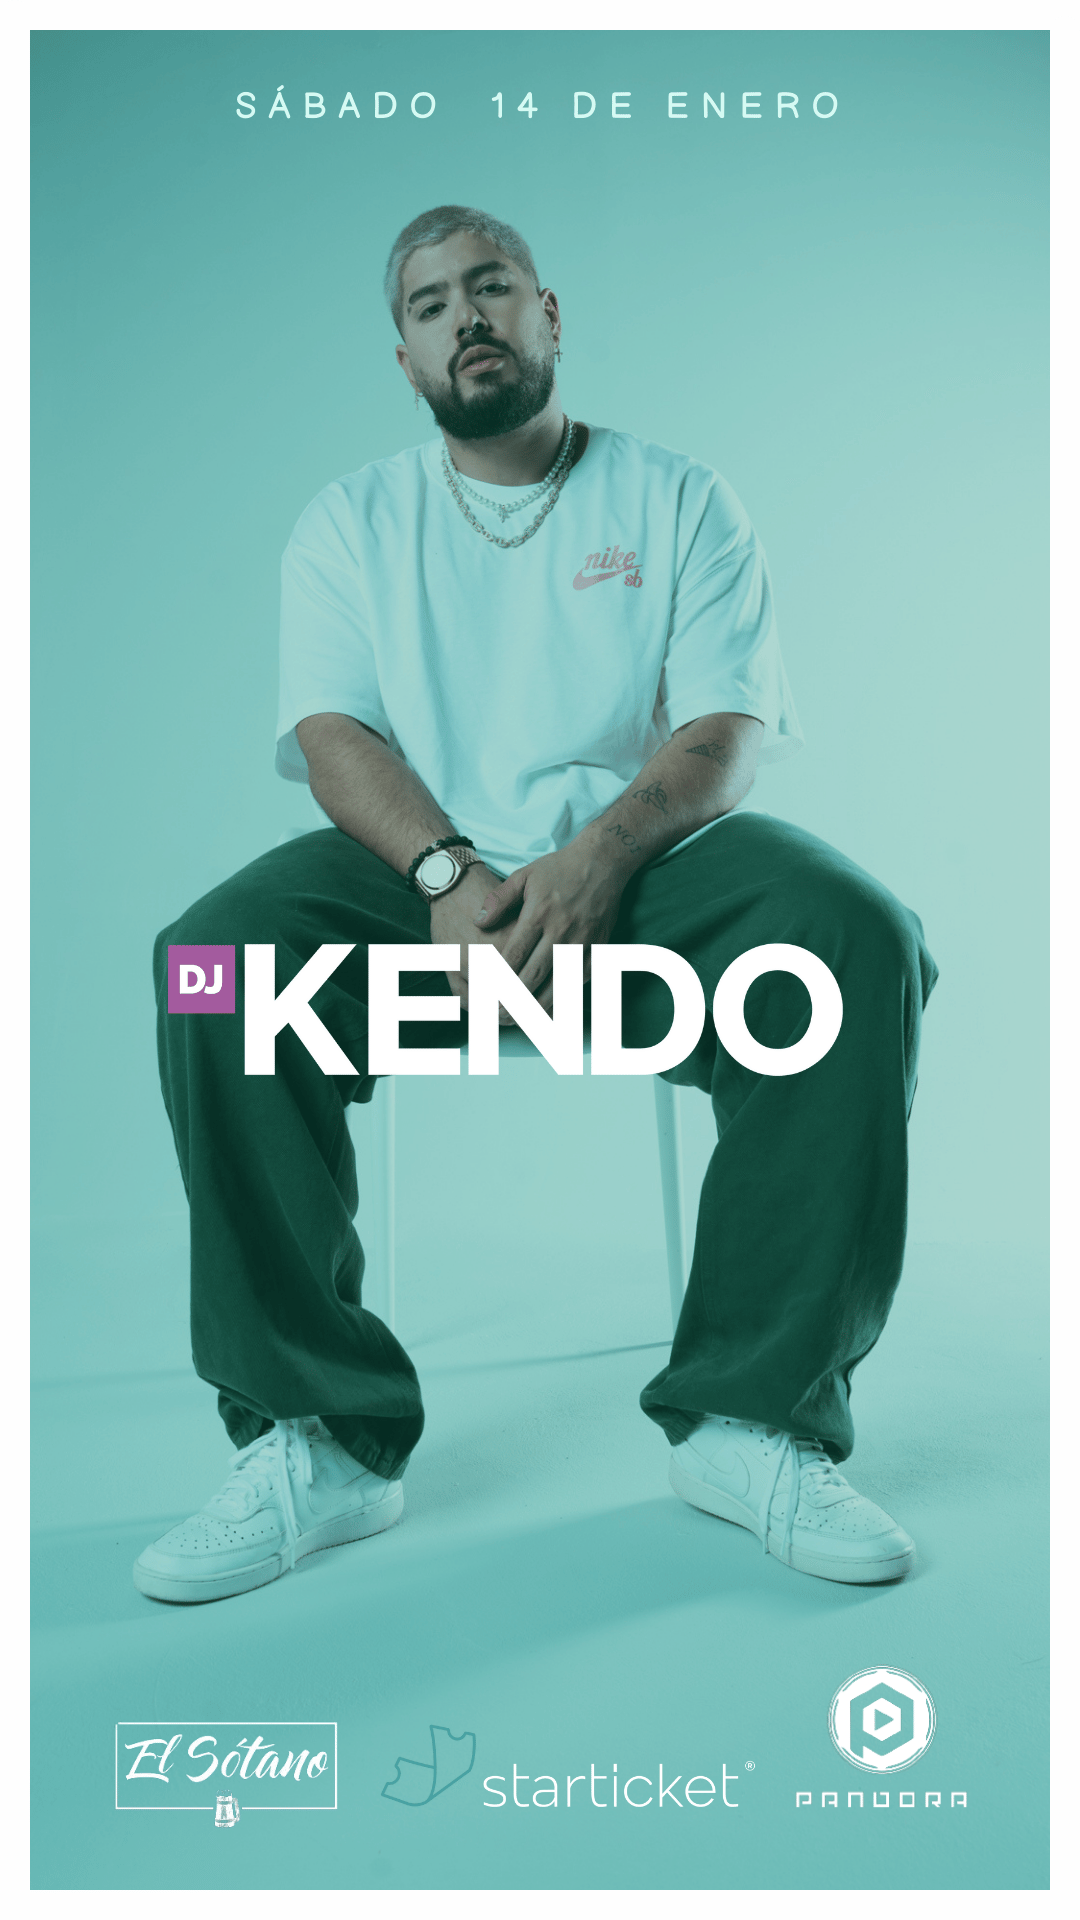 DJ Kendo by Pandora Entertianment